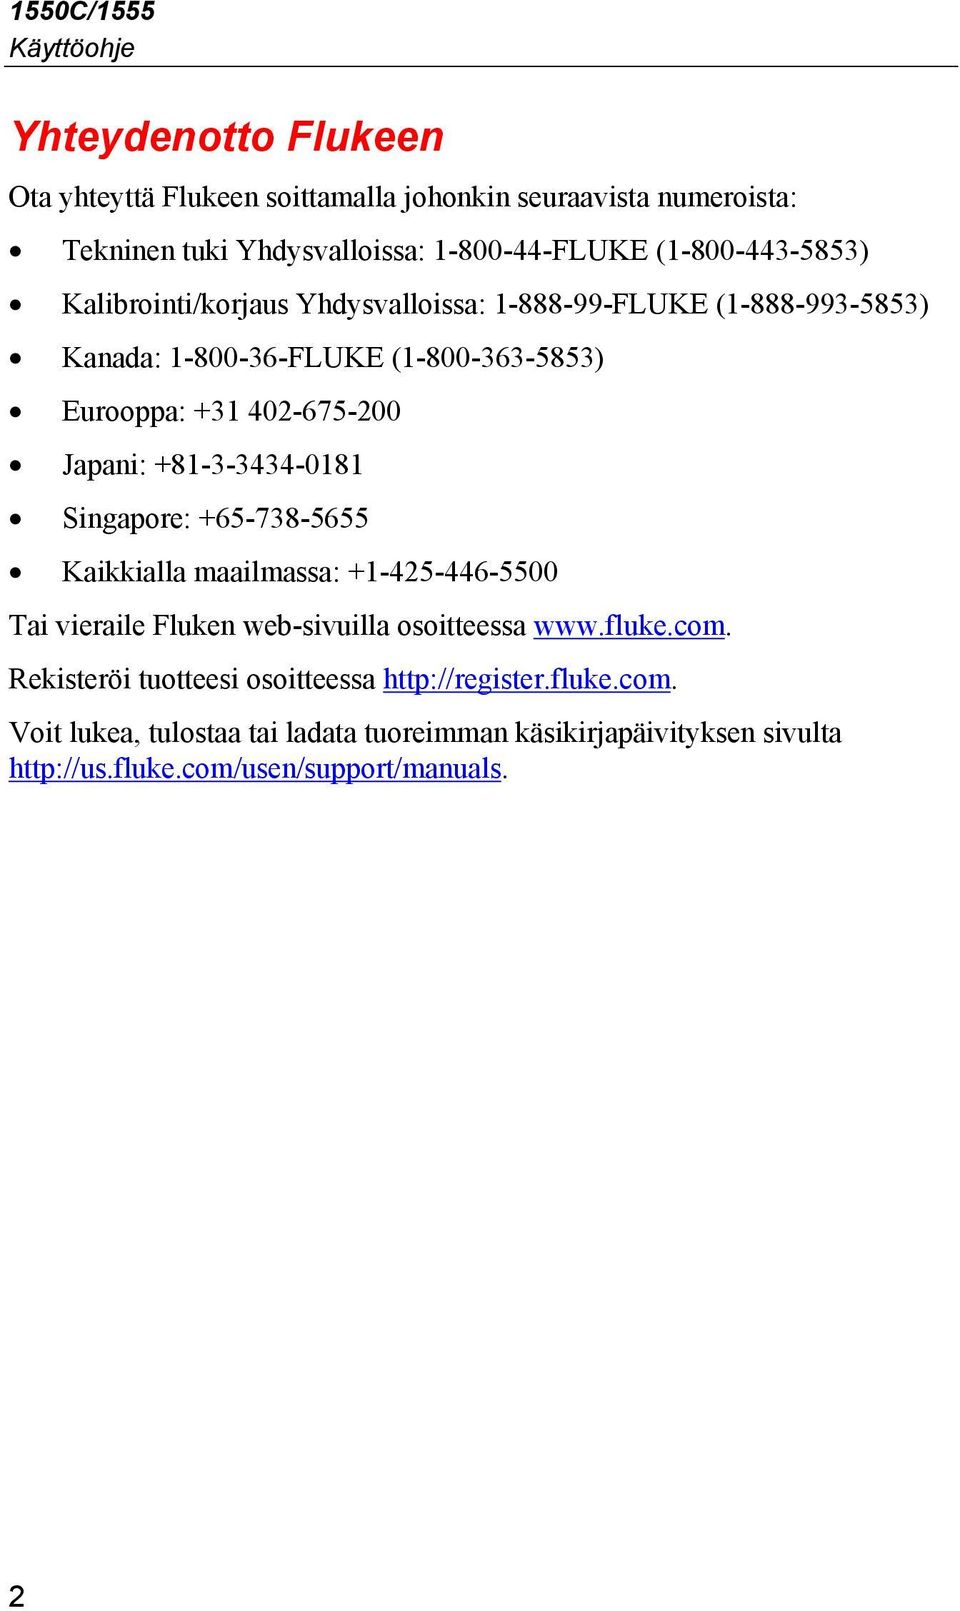 Japani: +81-3-3434-0181 Singapore: +65-738-5655 Kaikkialla maailmassa: +1-425-446-5500 Tai vieraile Fluken web-sivuilla osoitteessa www.fluke.com.